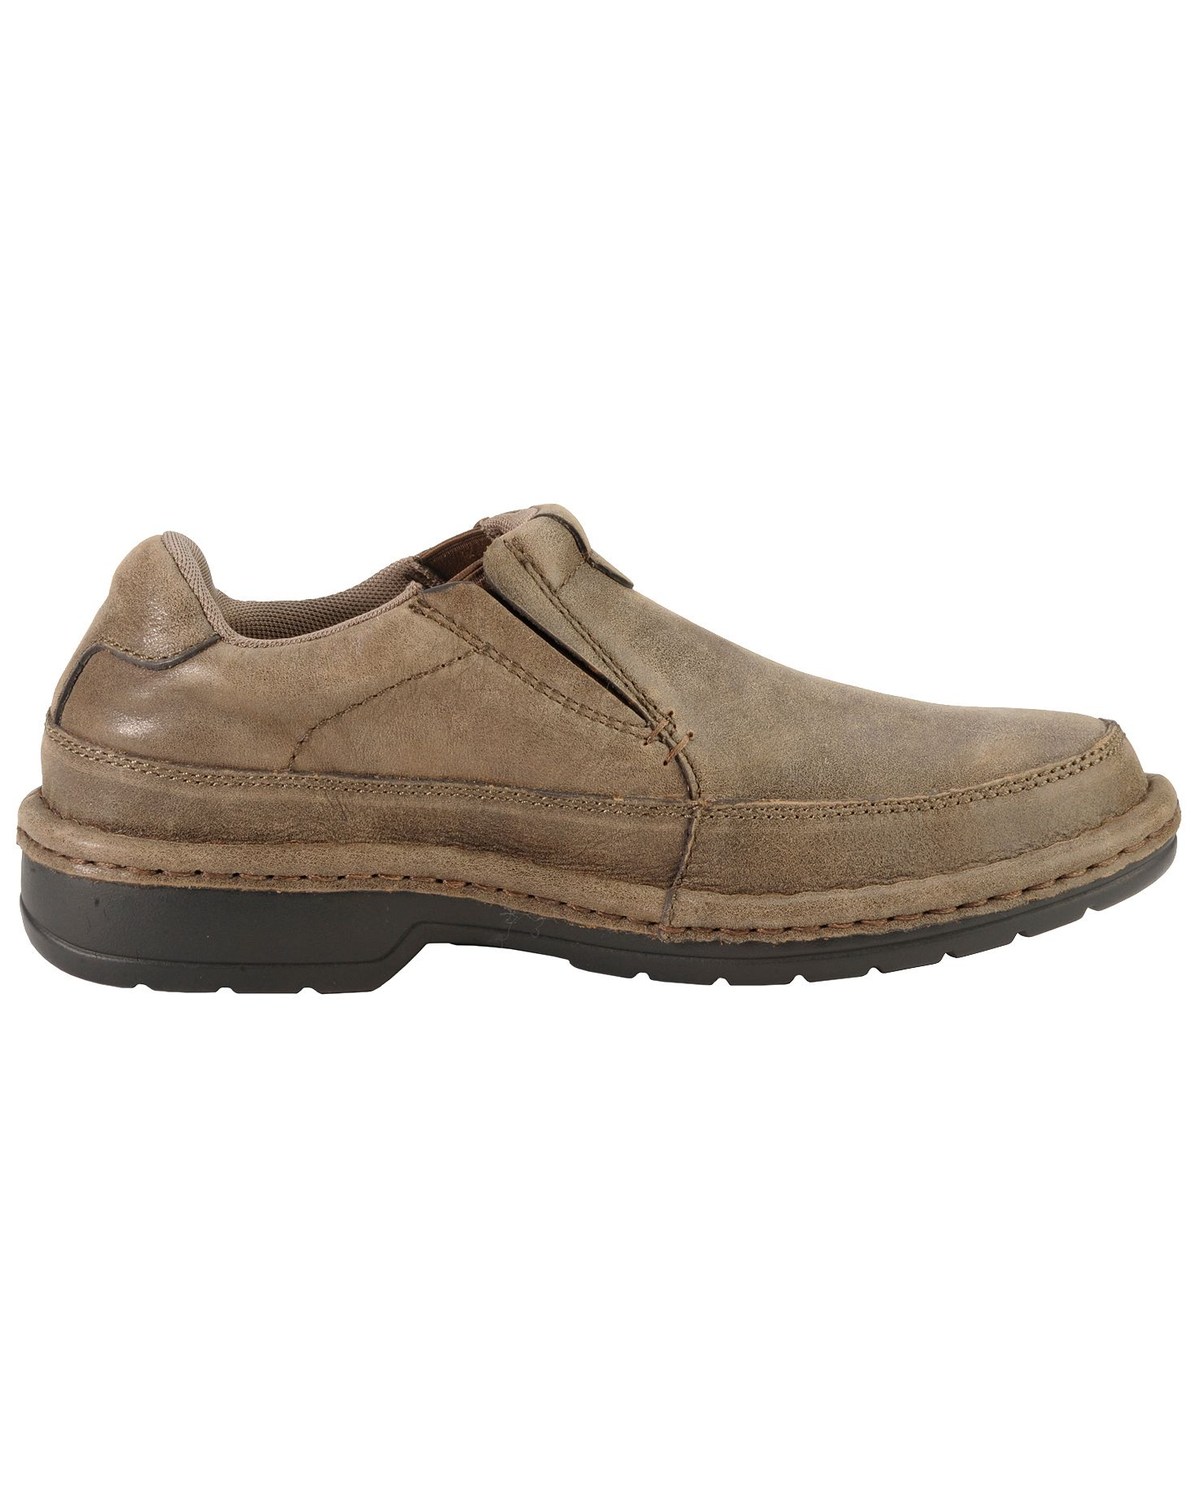 Roper Men's Casual Slip-On Shoes | Boot Barn